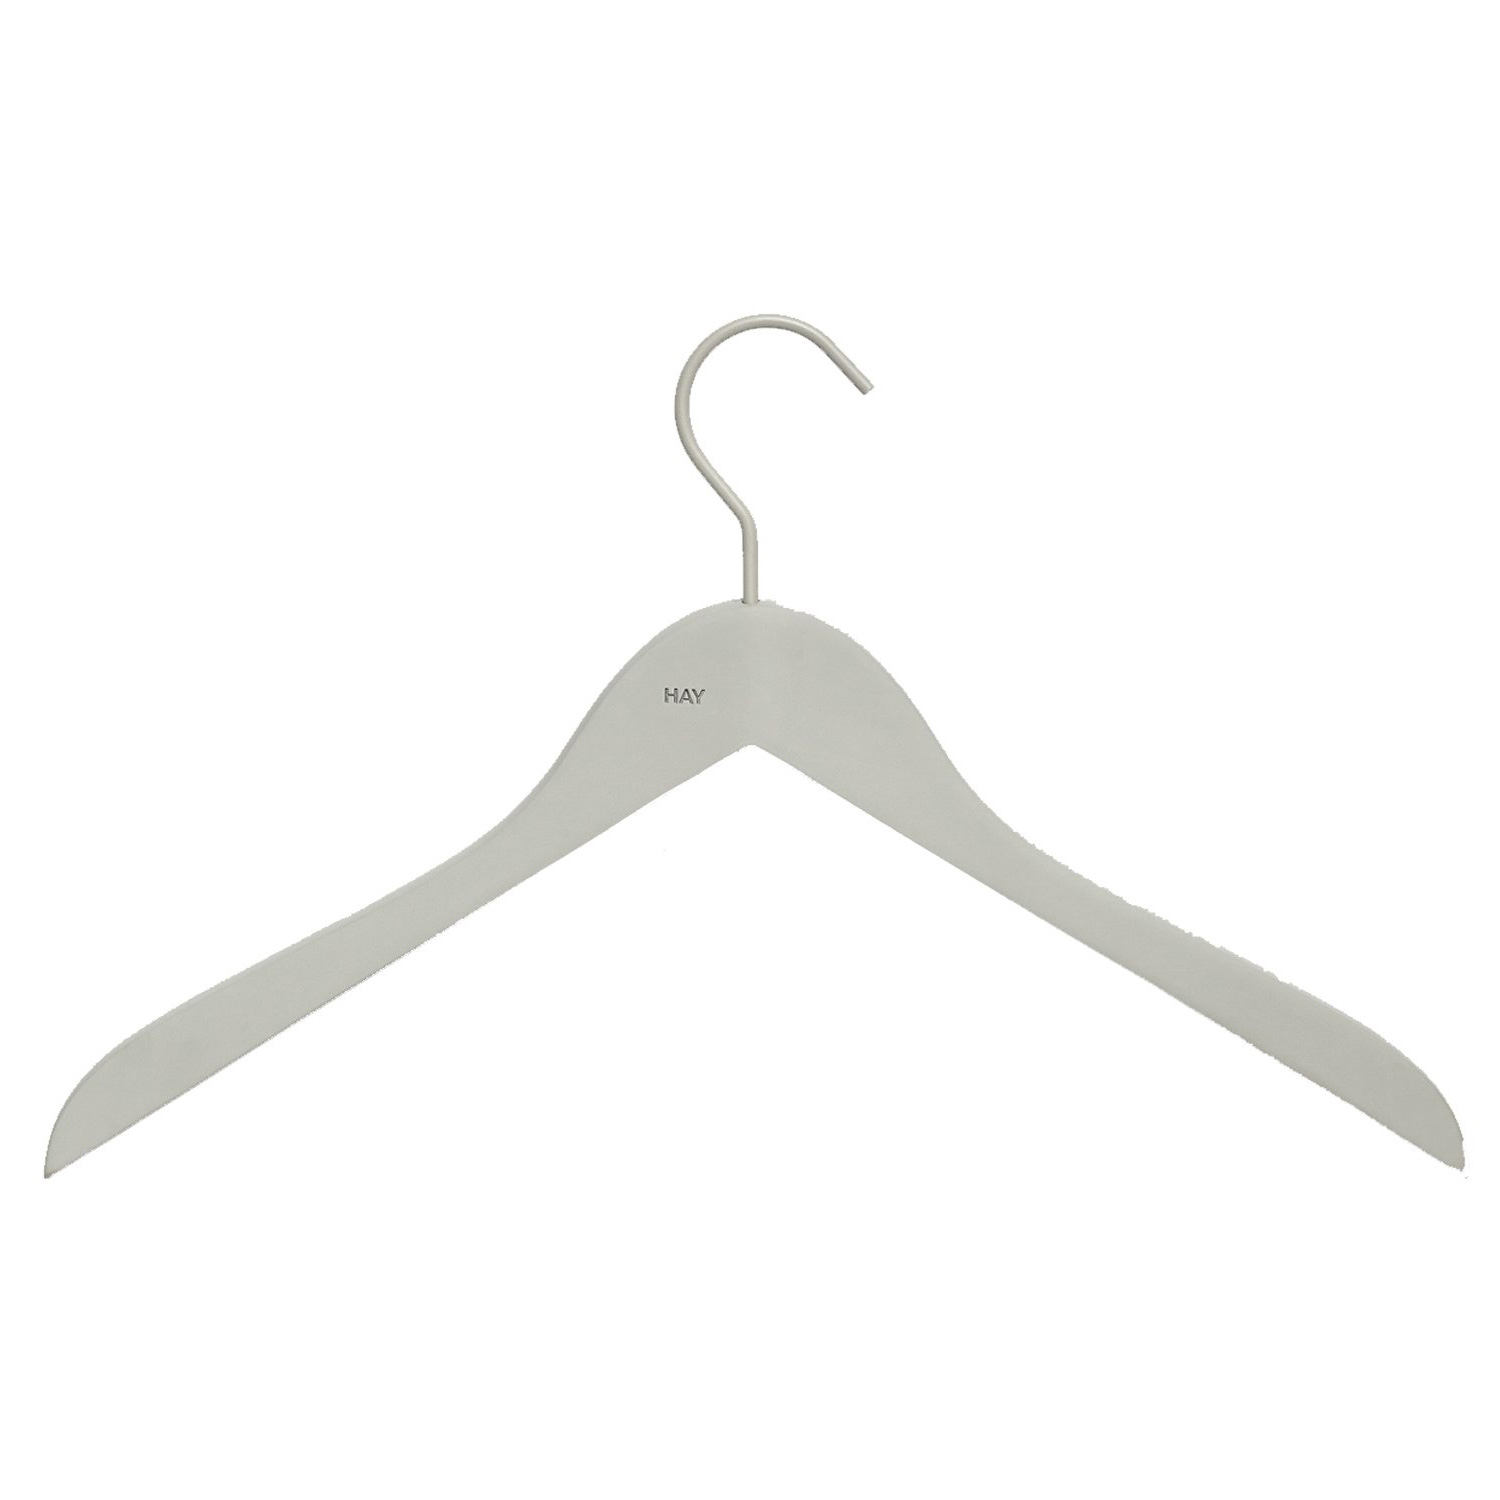 https://api-prod.royaldesign.se/api/products/image/11/hay-soft-hanger-thin-4-pack-1